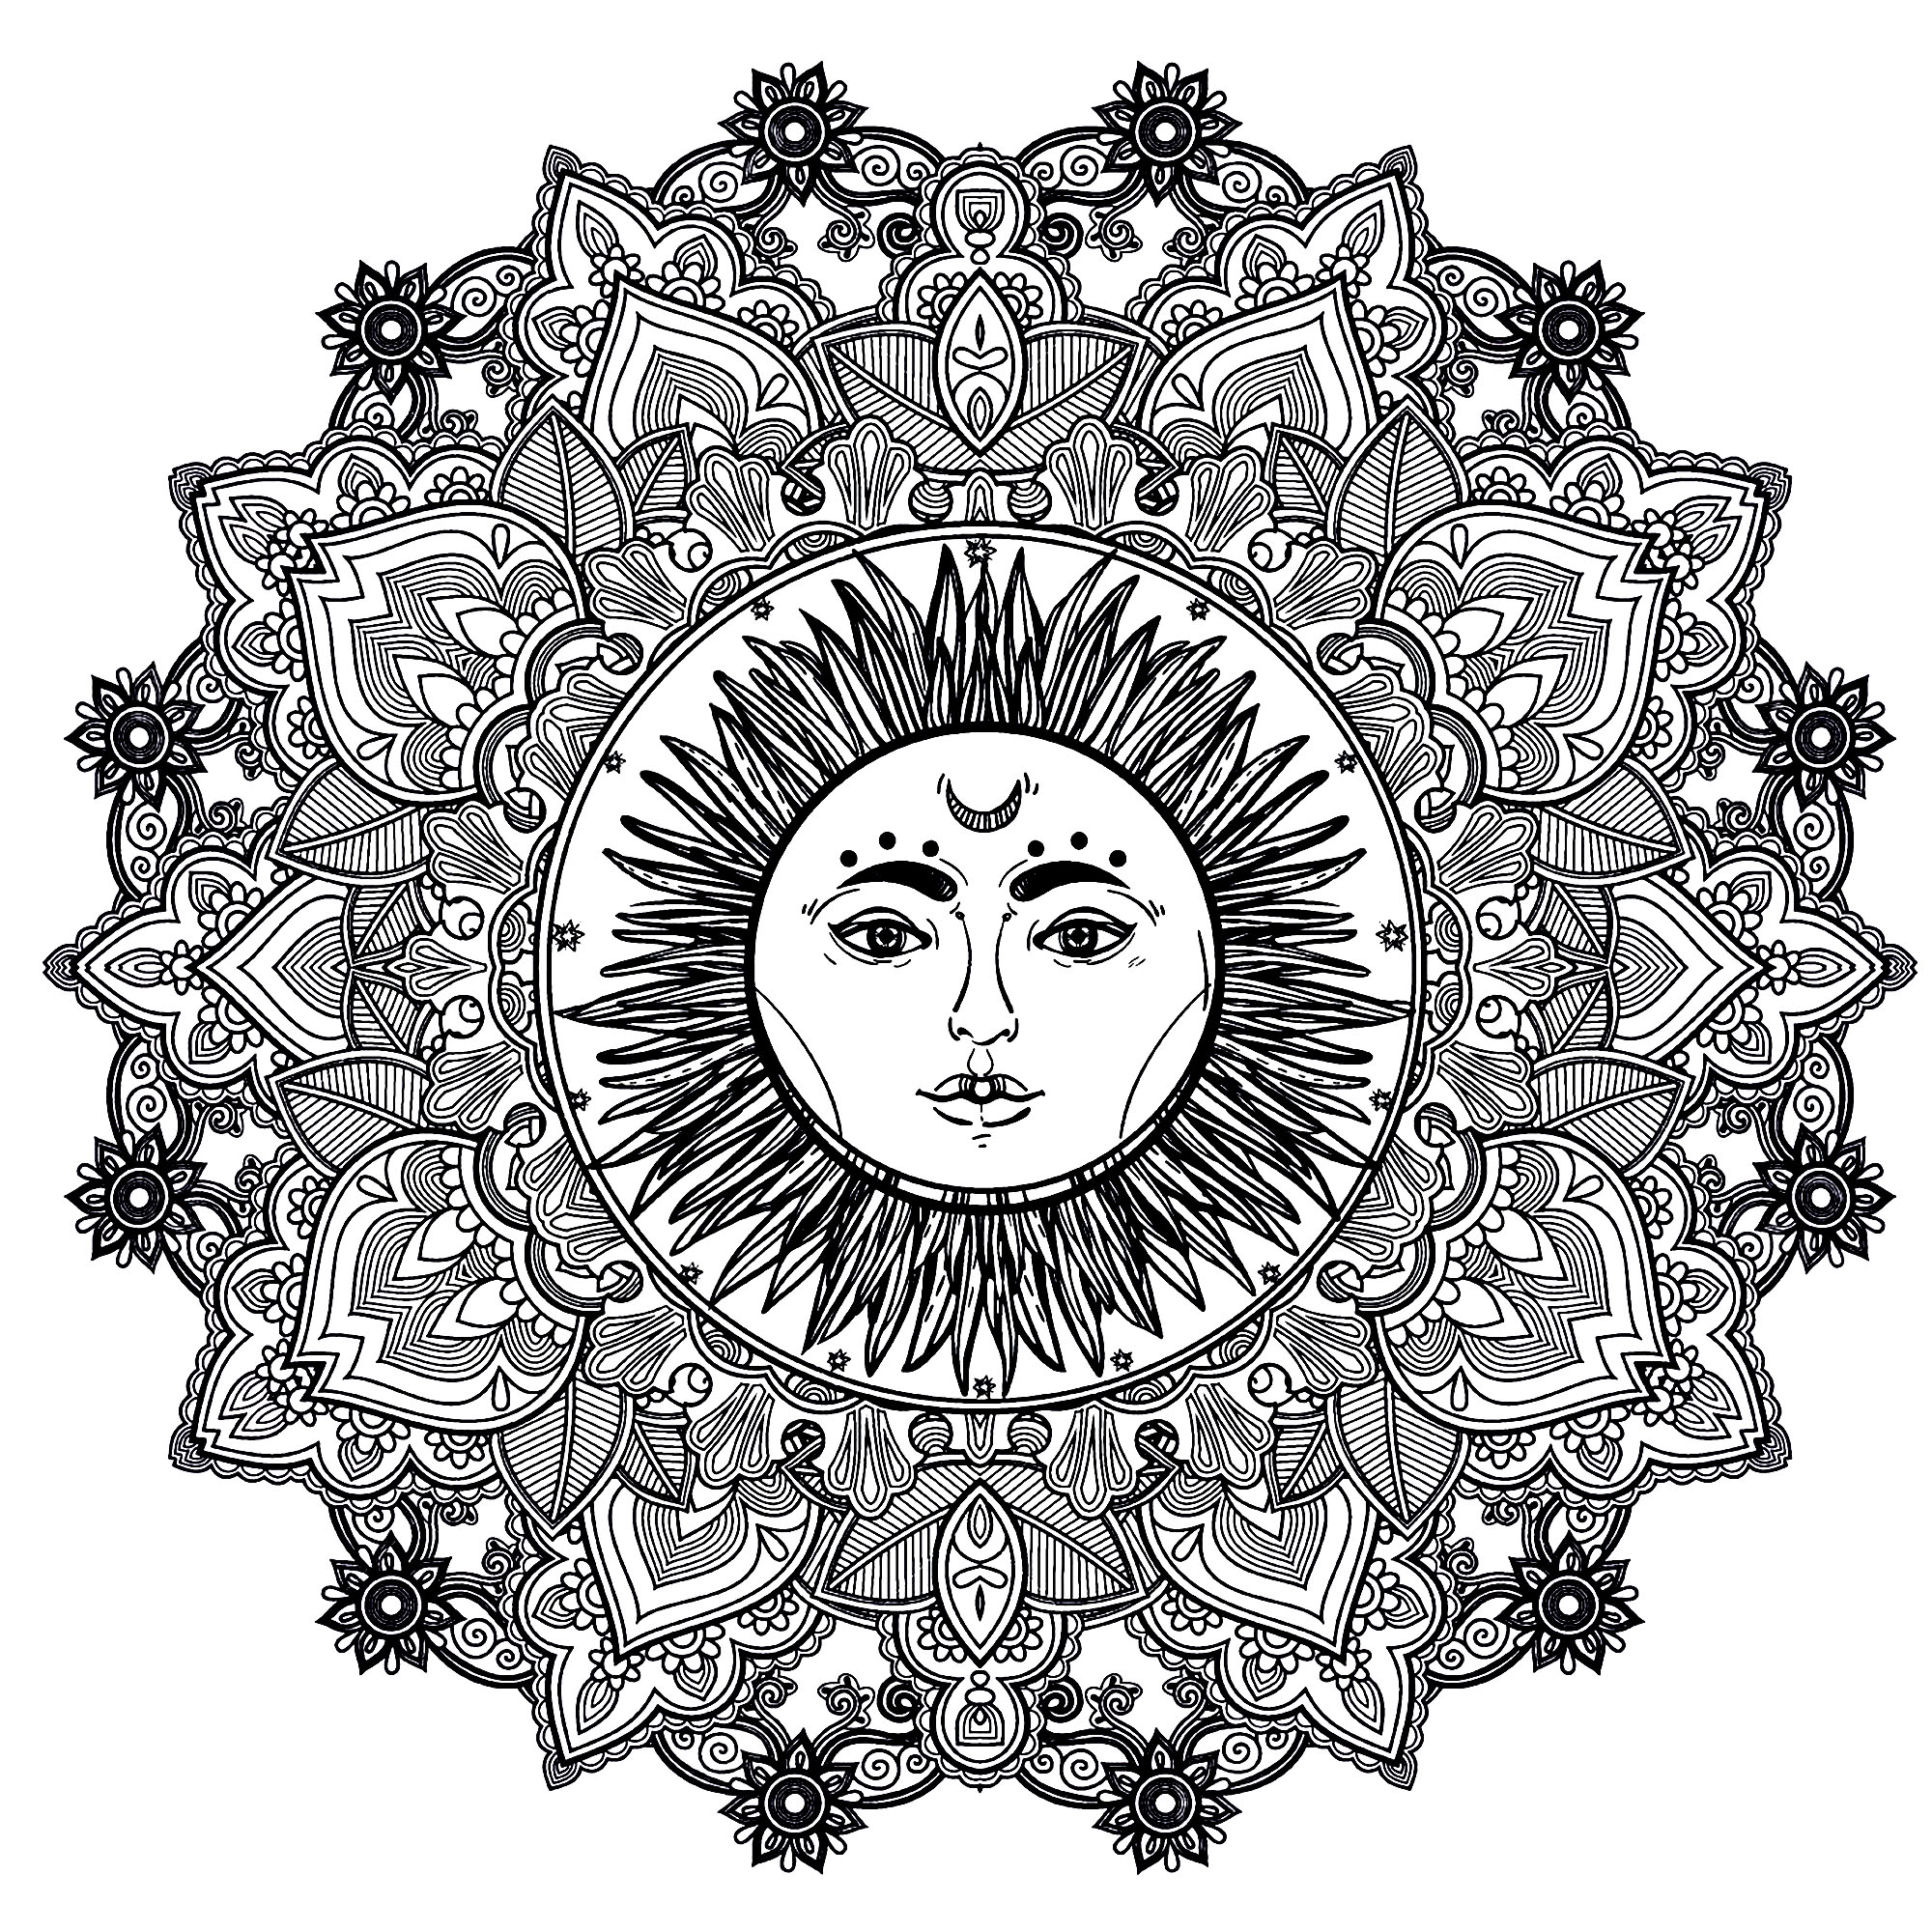 Un Mandala molto armonioso, con al centro un bel sole dal volto umano, per un momento di puro relax. Sentirete subito i benefici dell'Arteterapia.